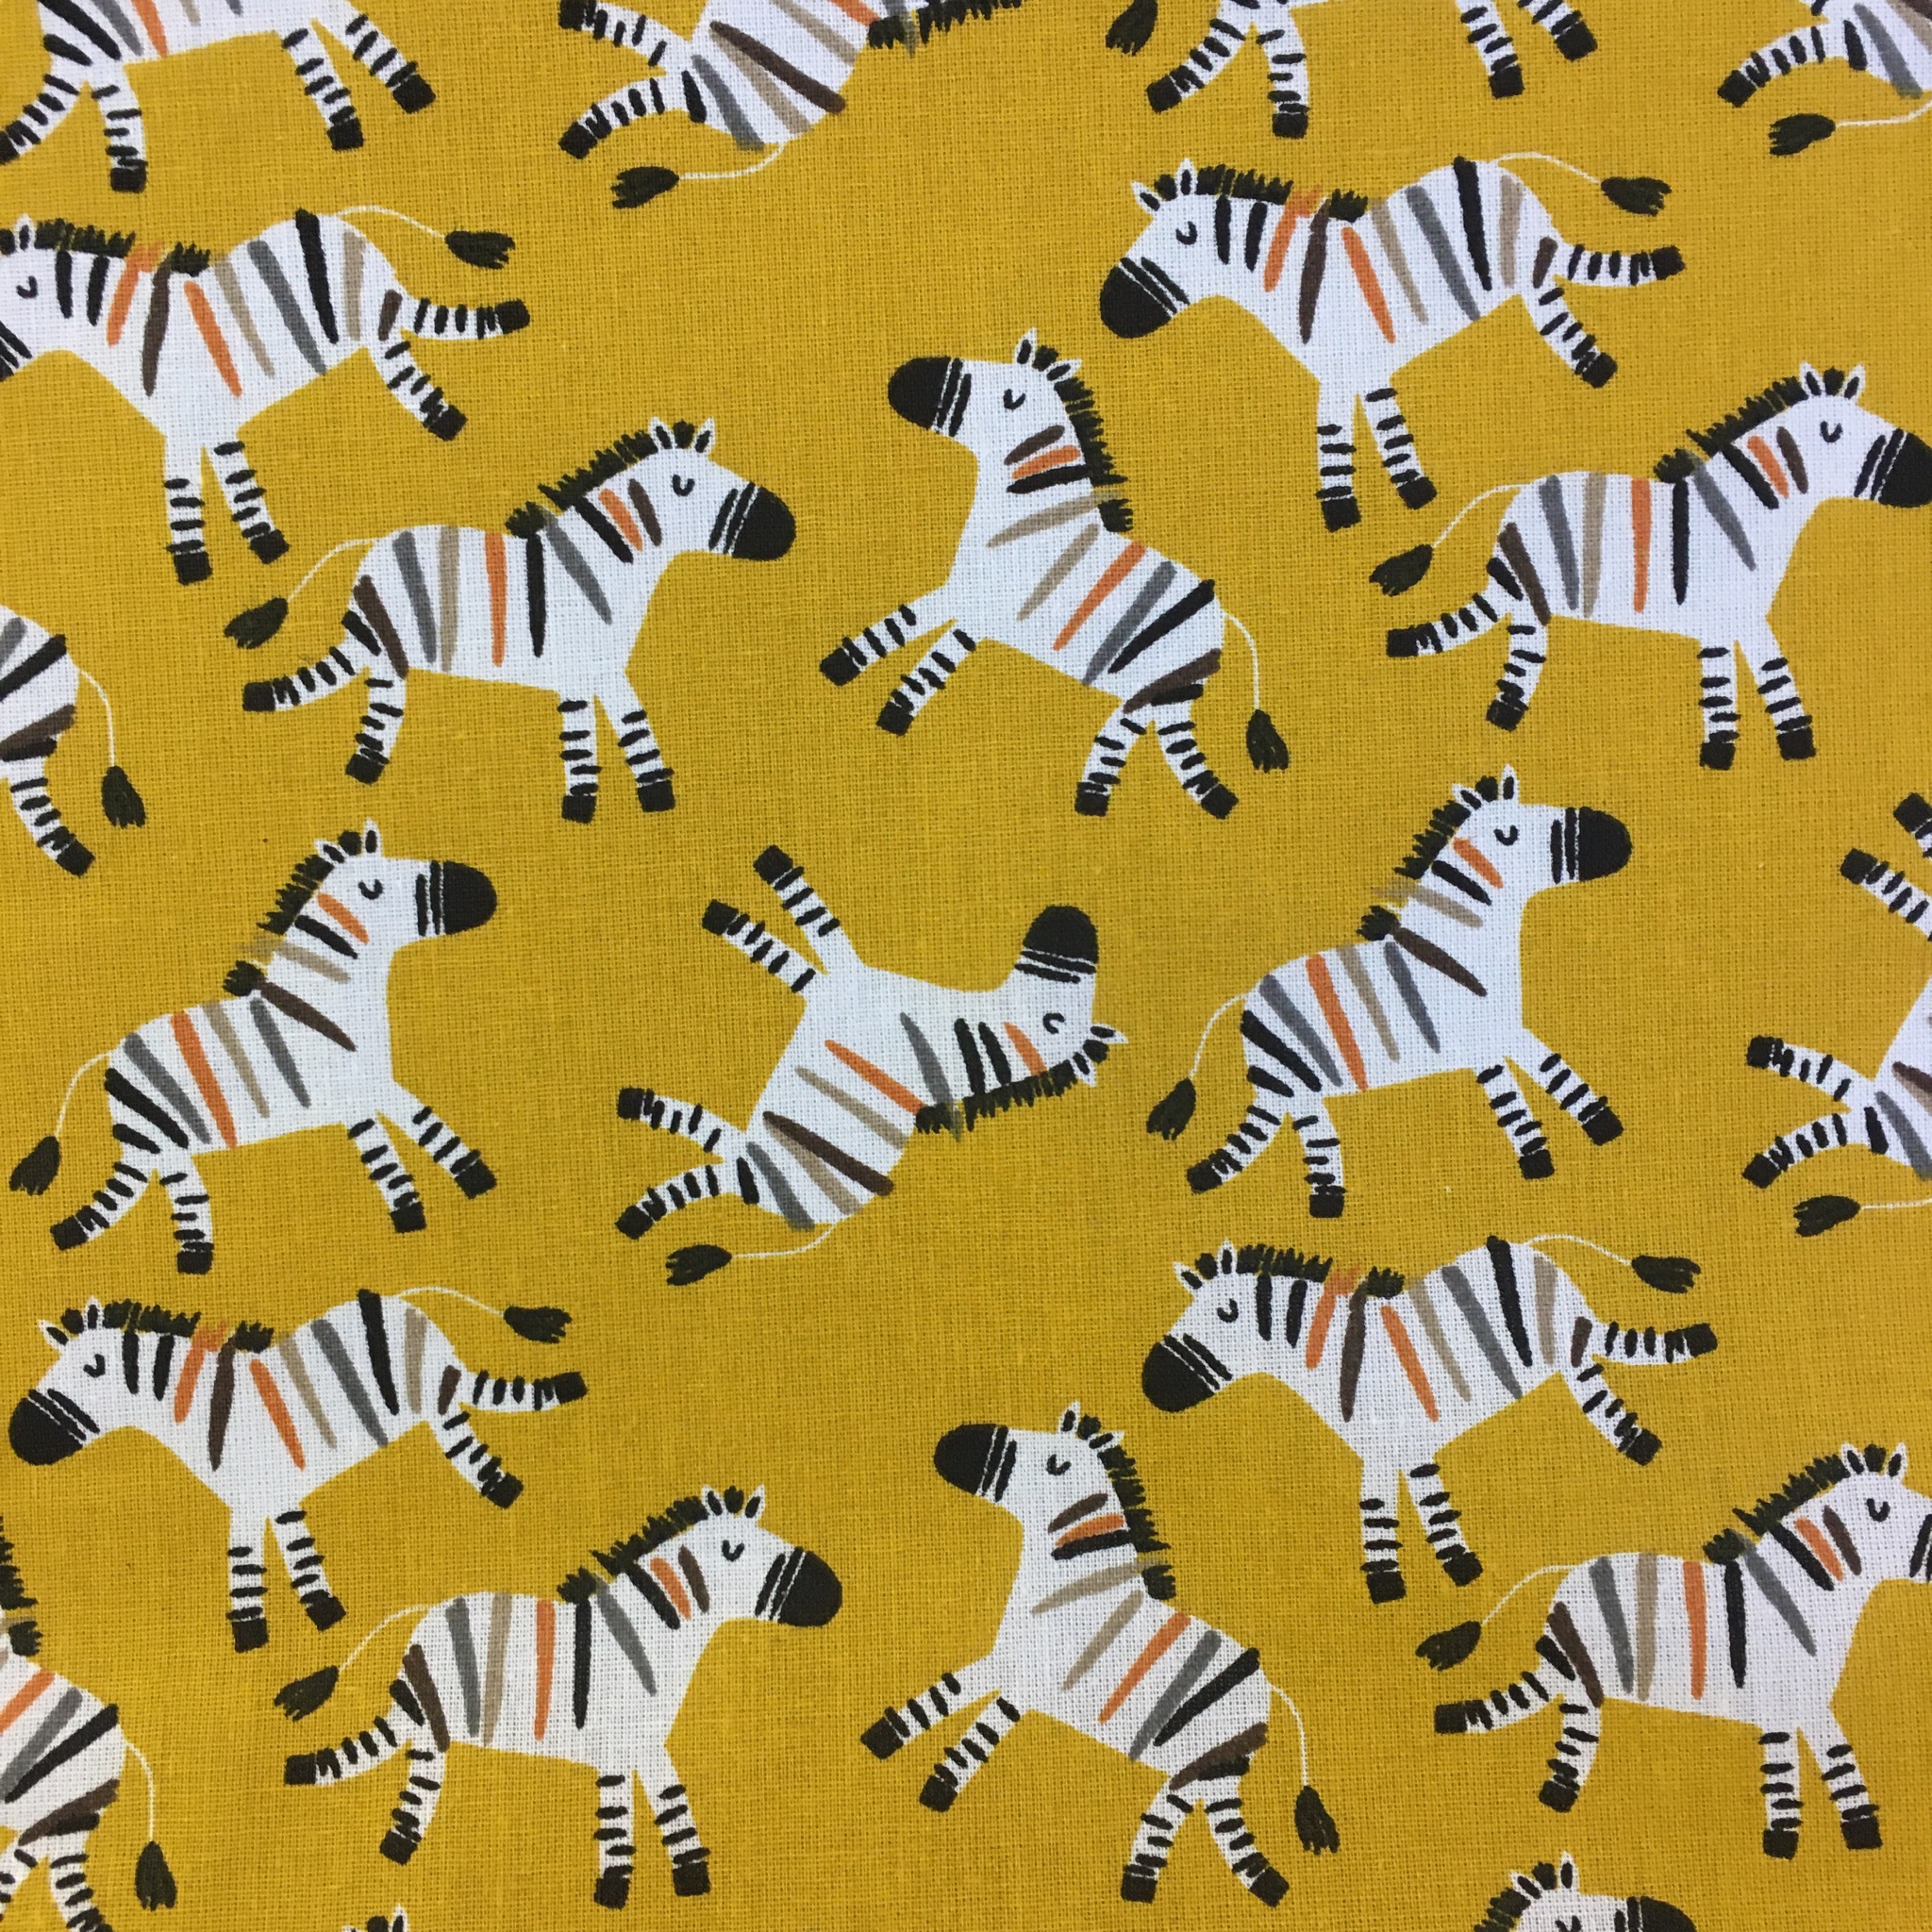 Baumwolle gelb mit Zebras